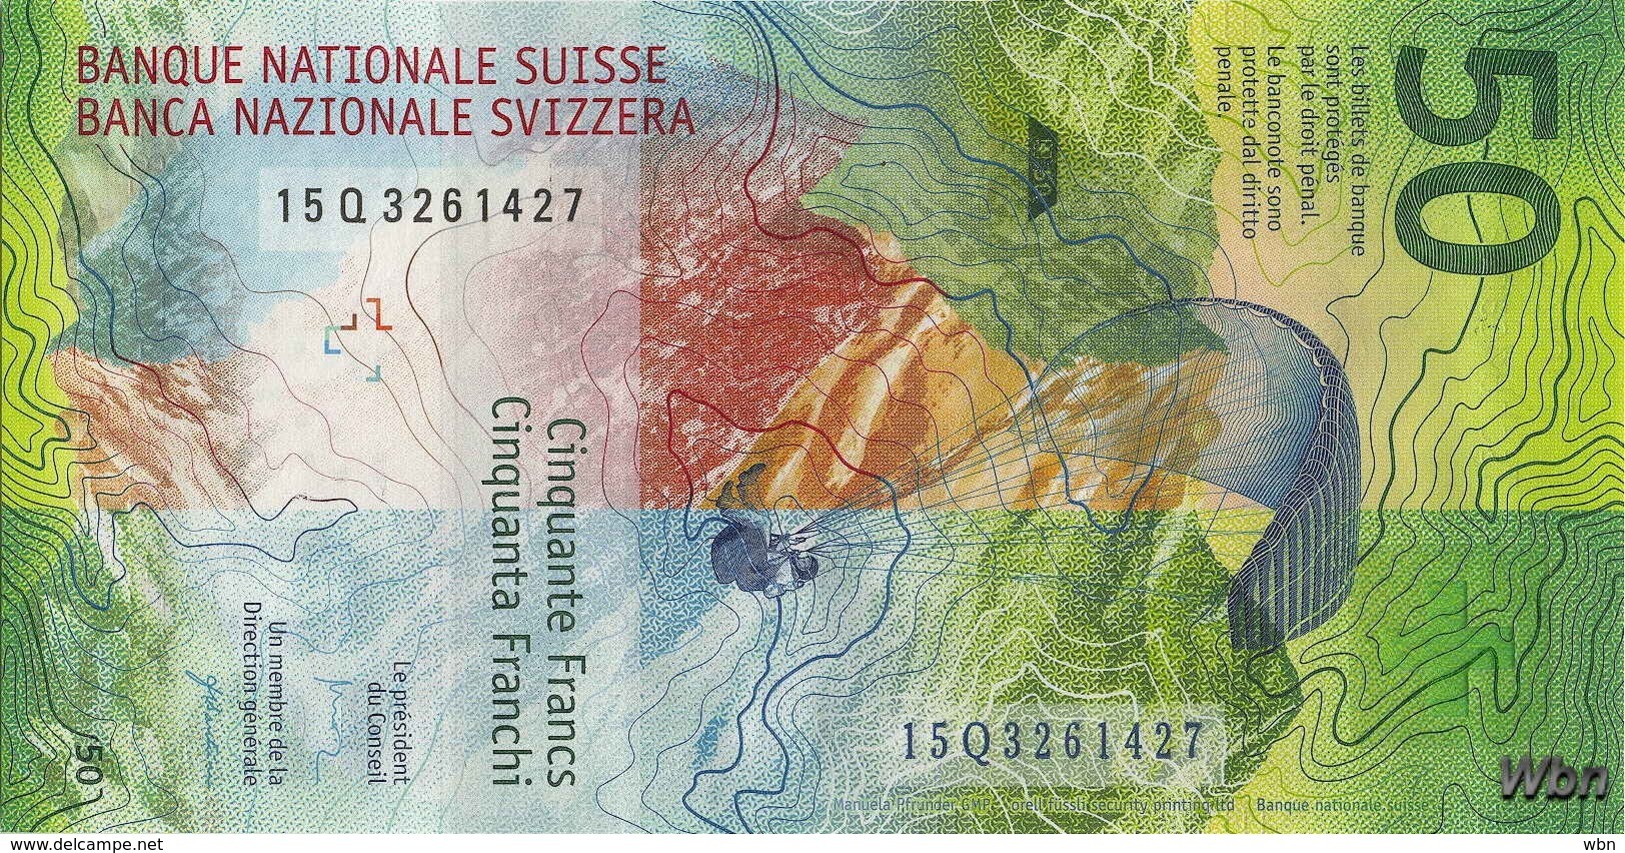 Suisse 50 Francs (P77) 2015b (Pref: Q) -UNC- - Switzerland